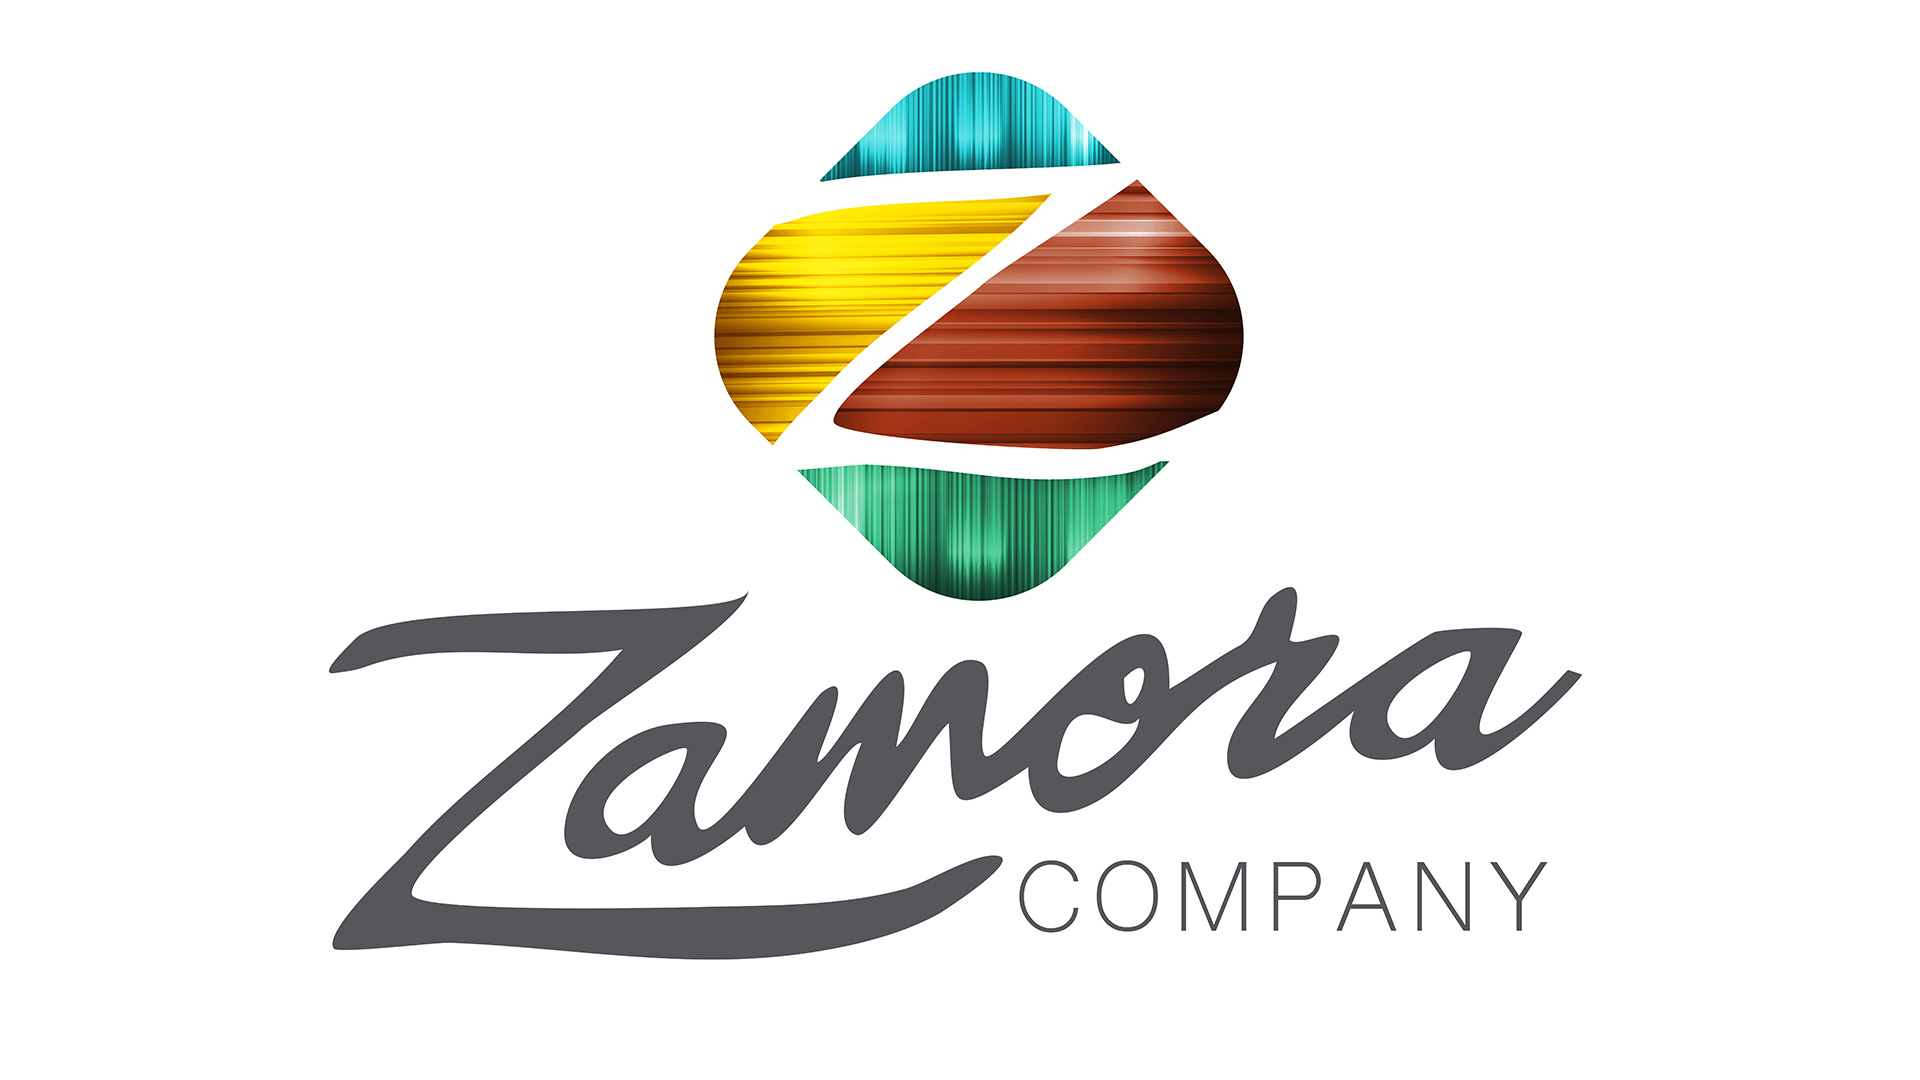 Zamora Company Logo.png